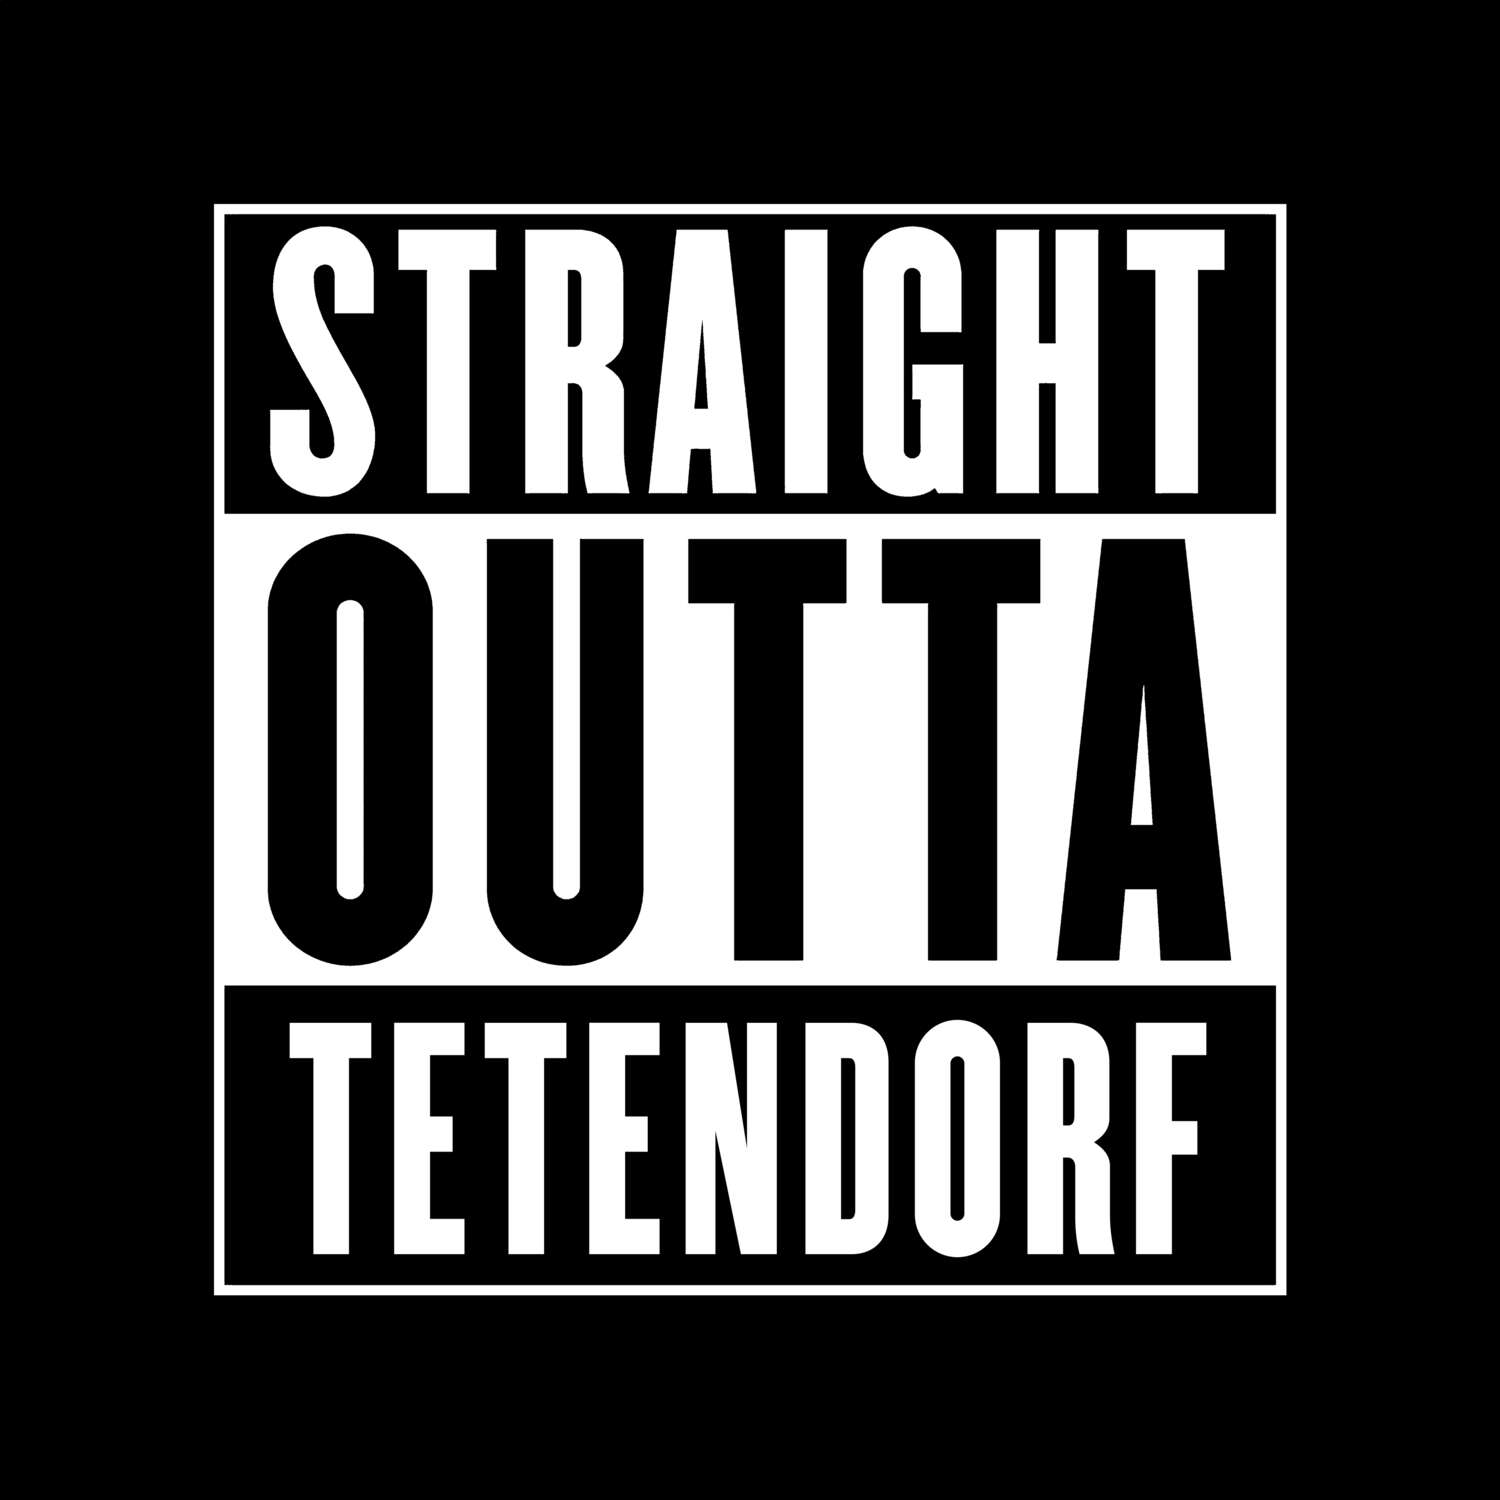 Tetendorf T-Shirt »Straight Outta«